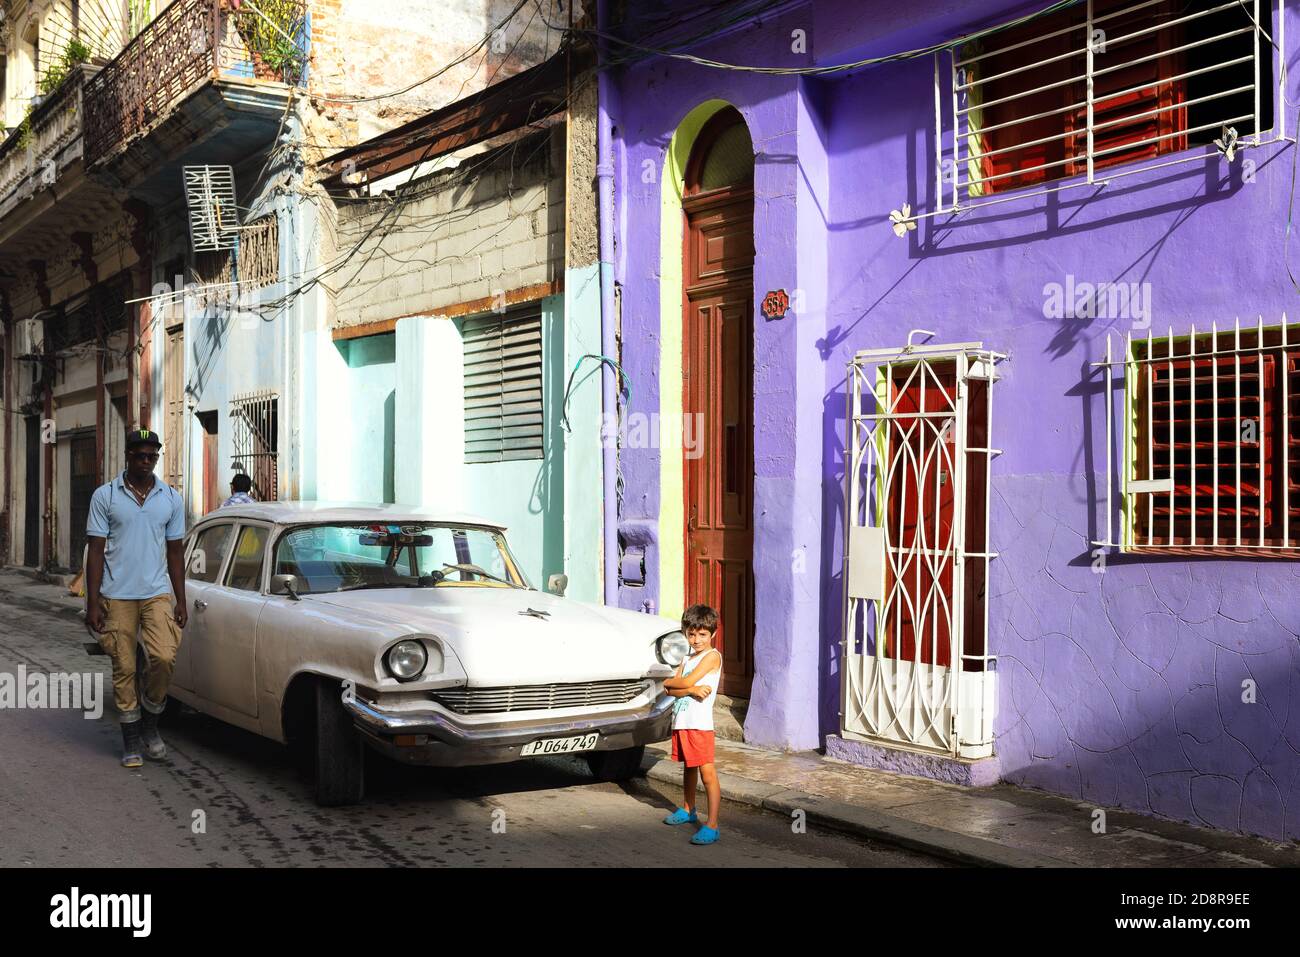 Scène du matin de rue à la Havane Vieja, Cuba. Architecture, personnes et voiture américaine vintage. Banque D'Images